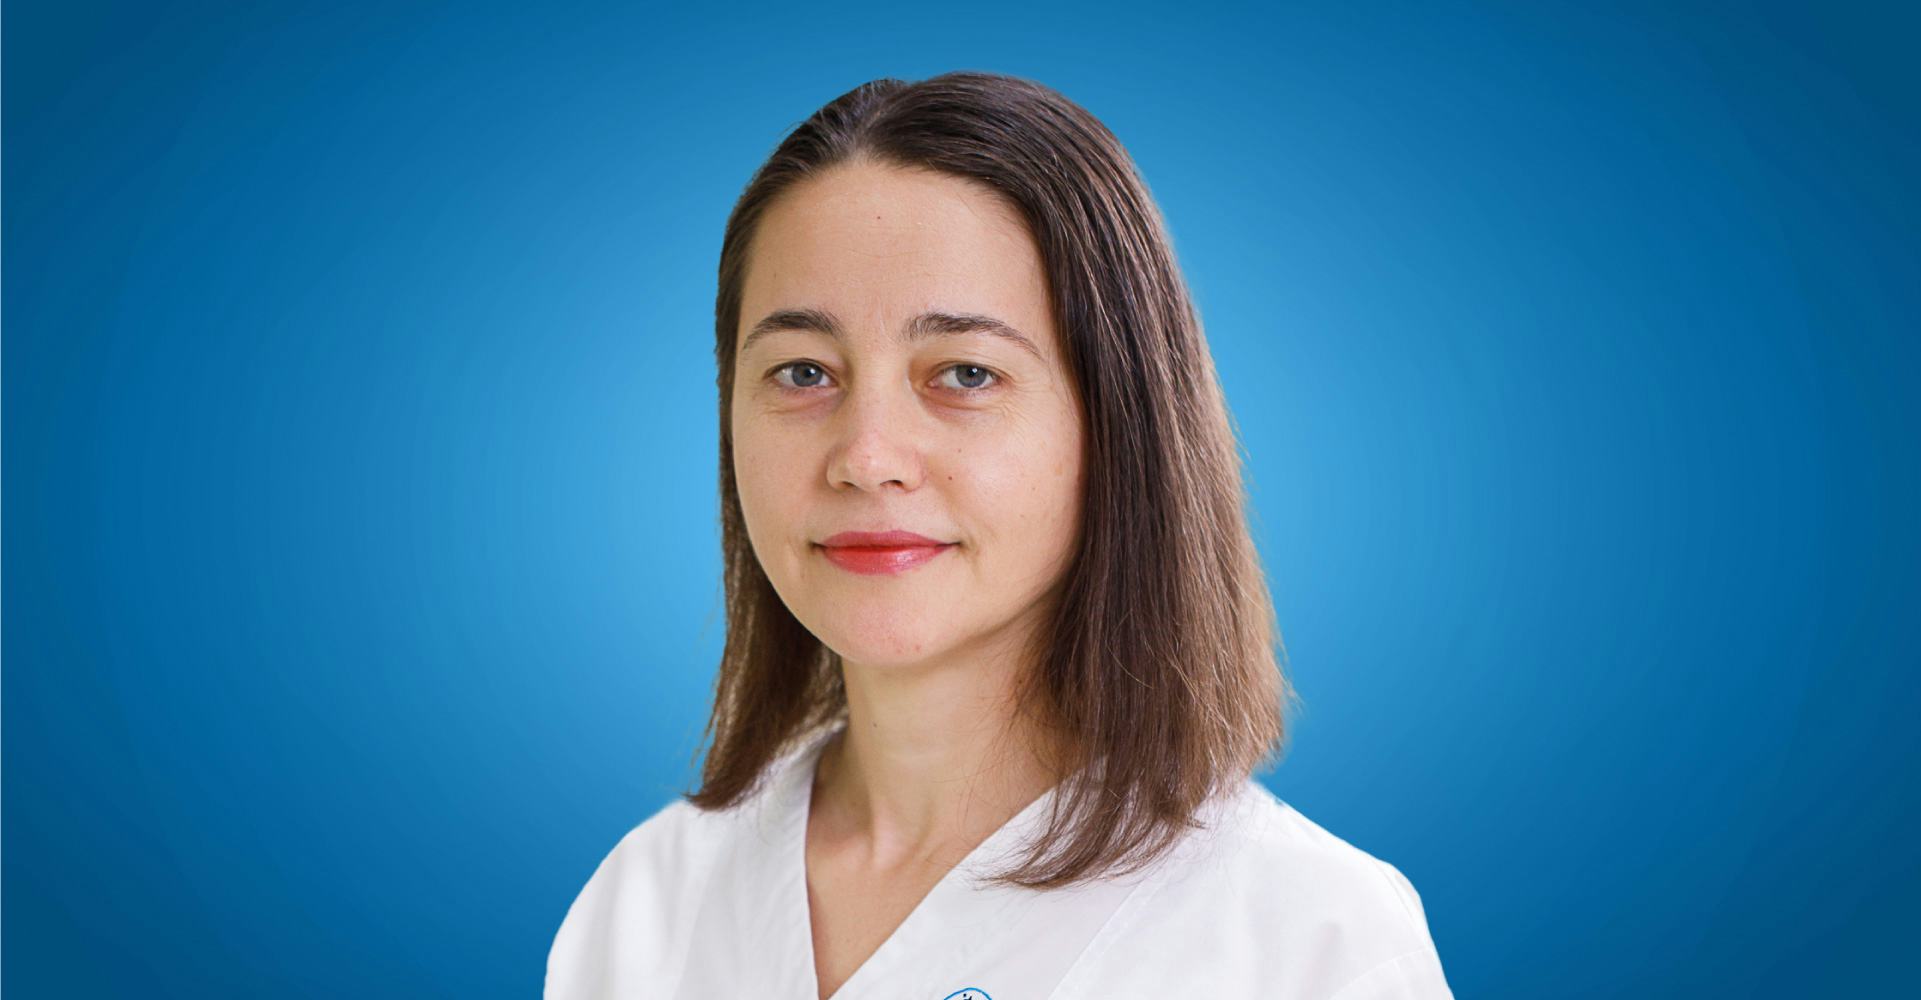 Dr. Angela Georgescu